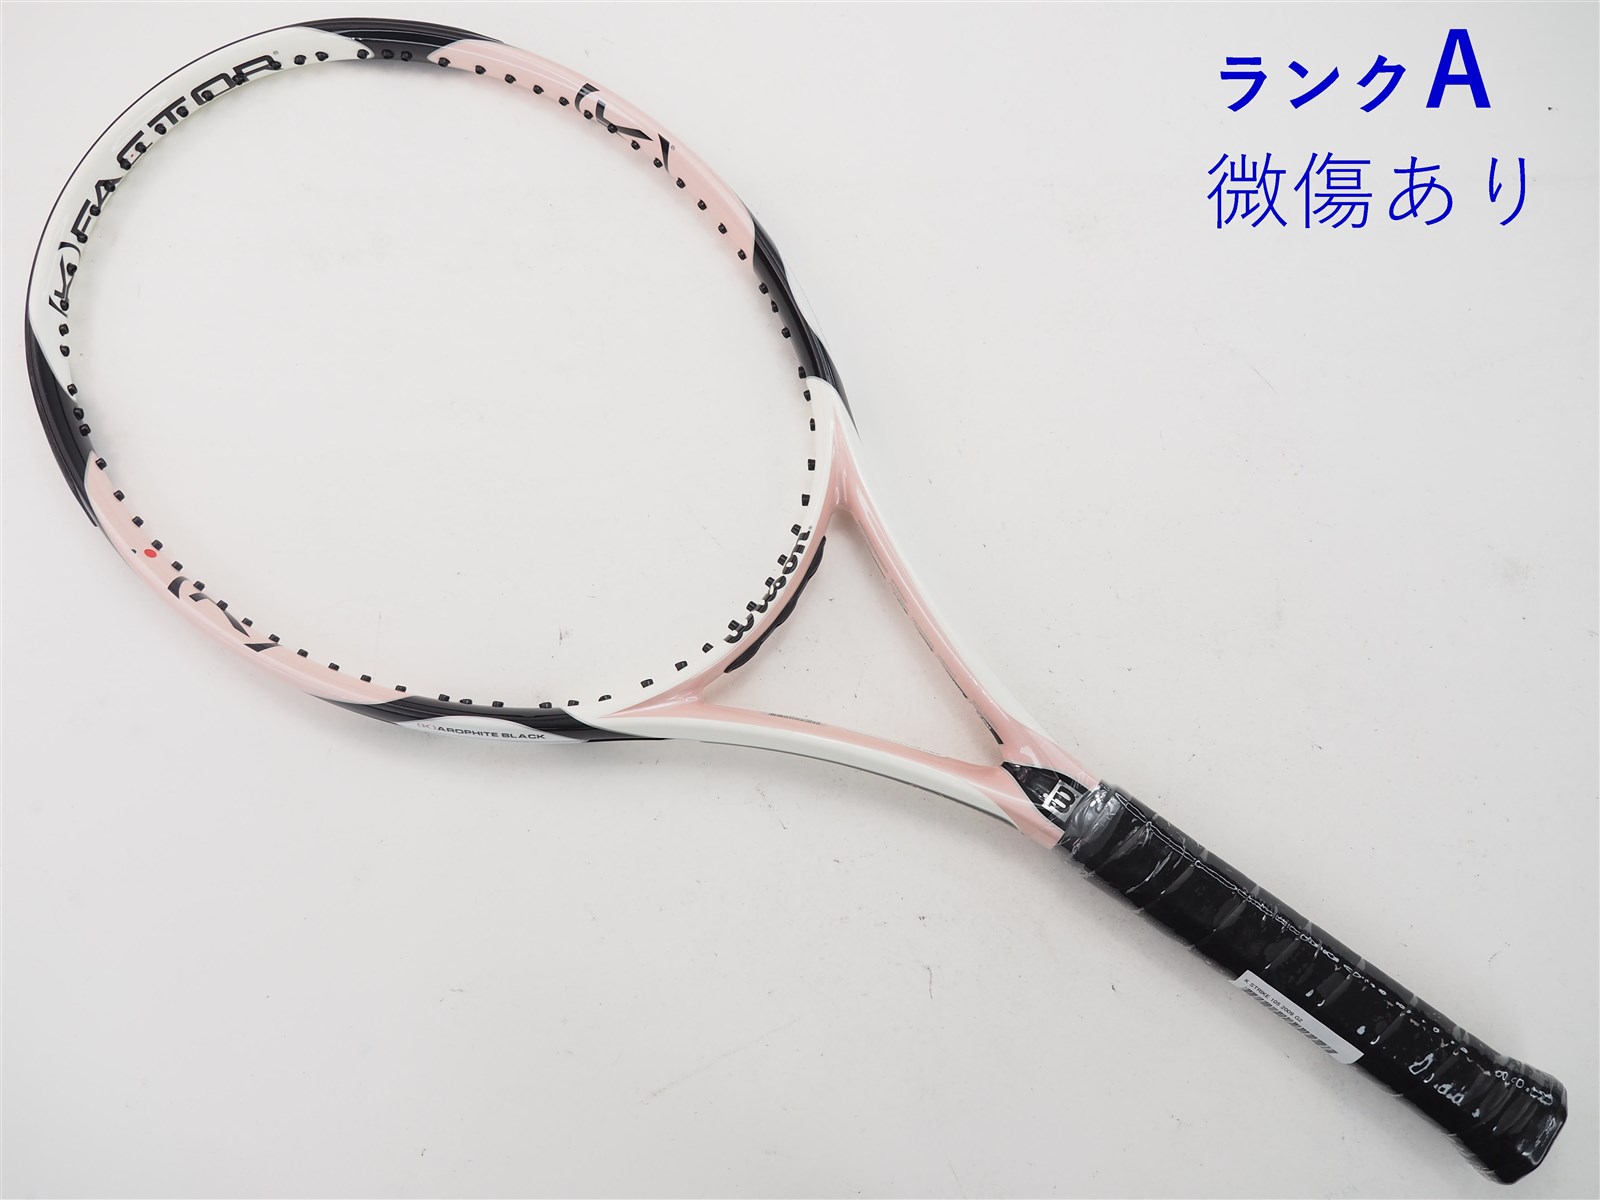 テニスラケット ウィルソン K ストライク 105 2009年モデル (G2)WILSON